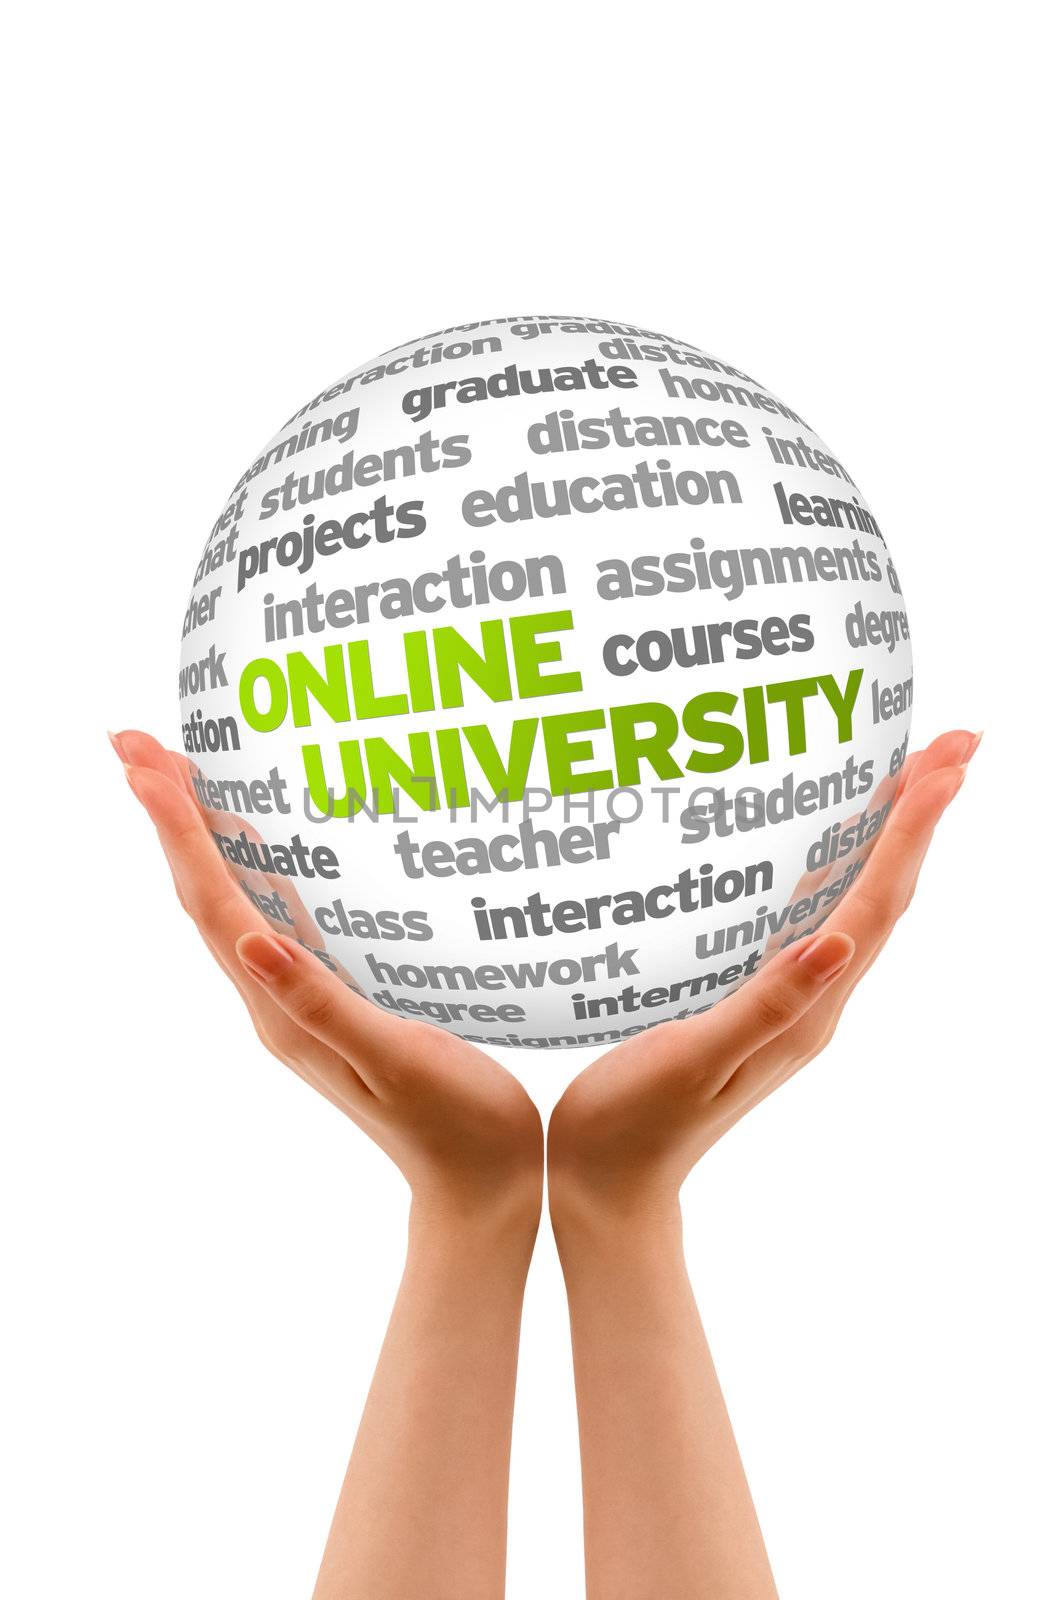 Online University by kbuntu